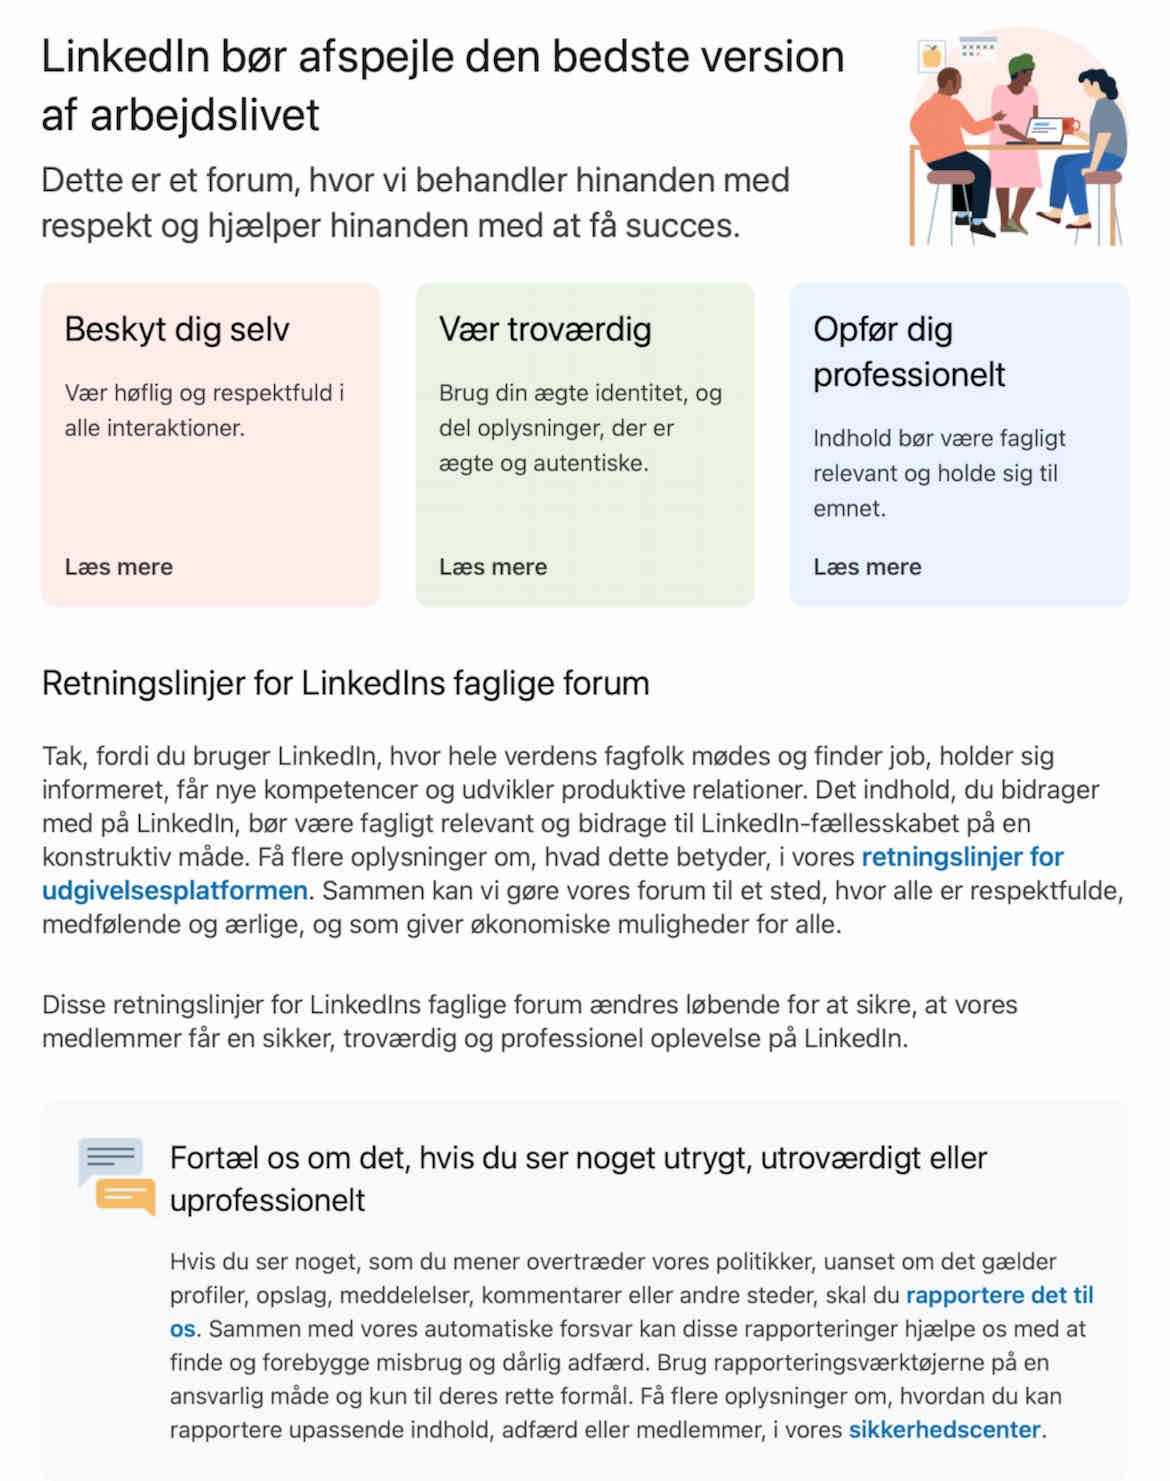 Retningslinjer for LinkedIns faglige forum